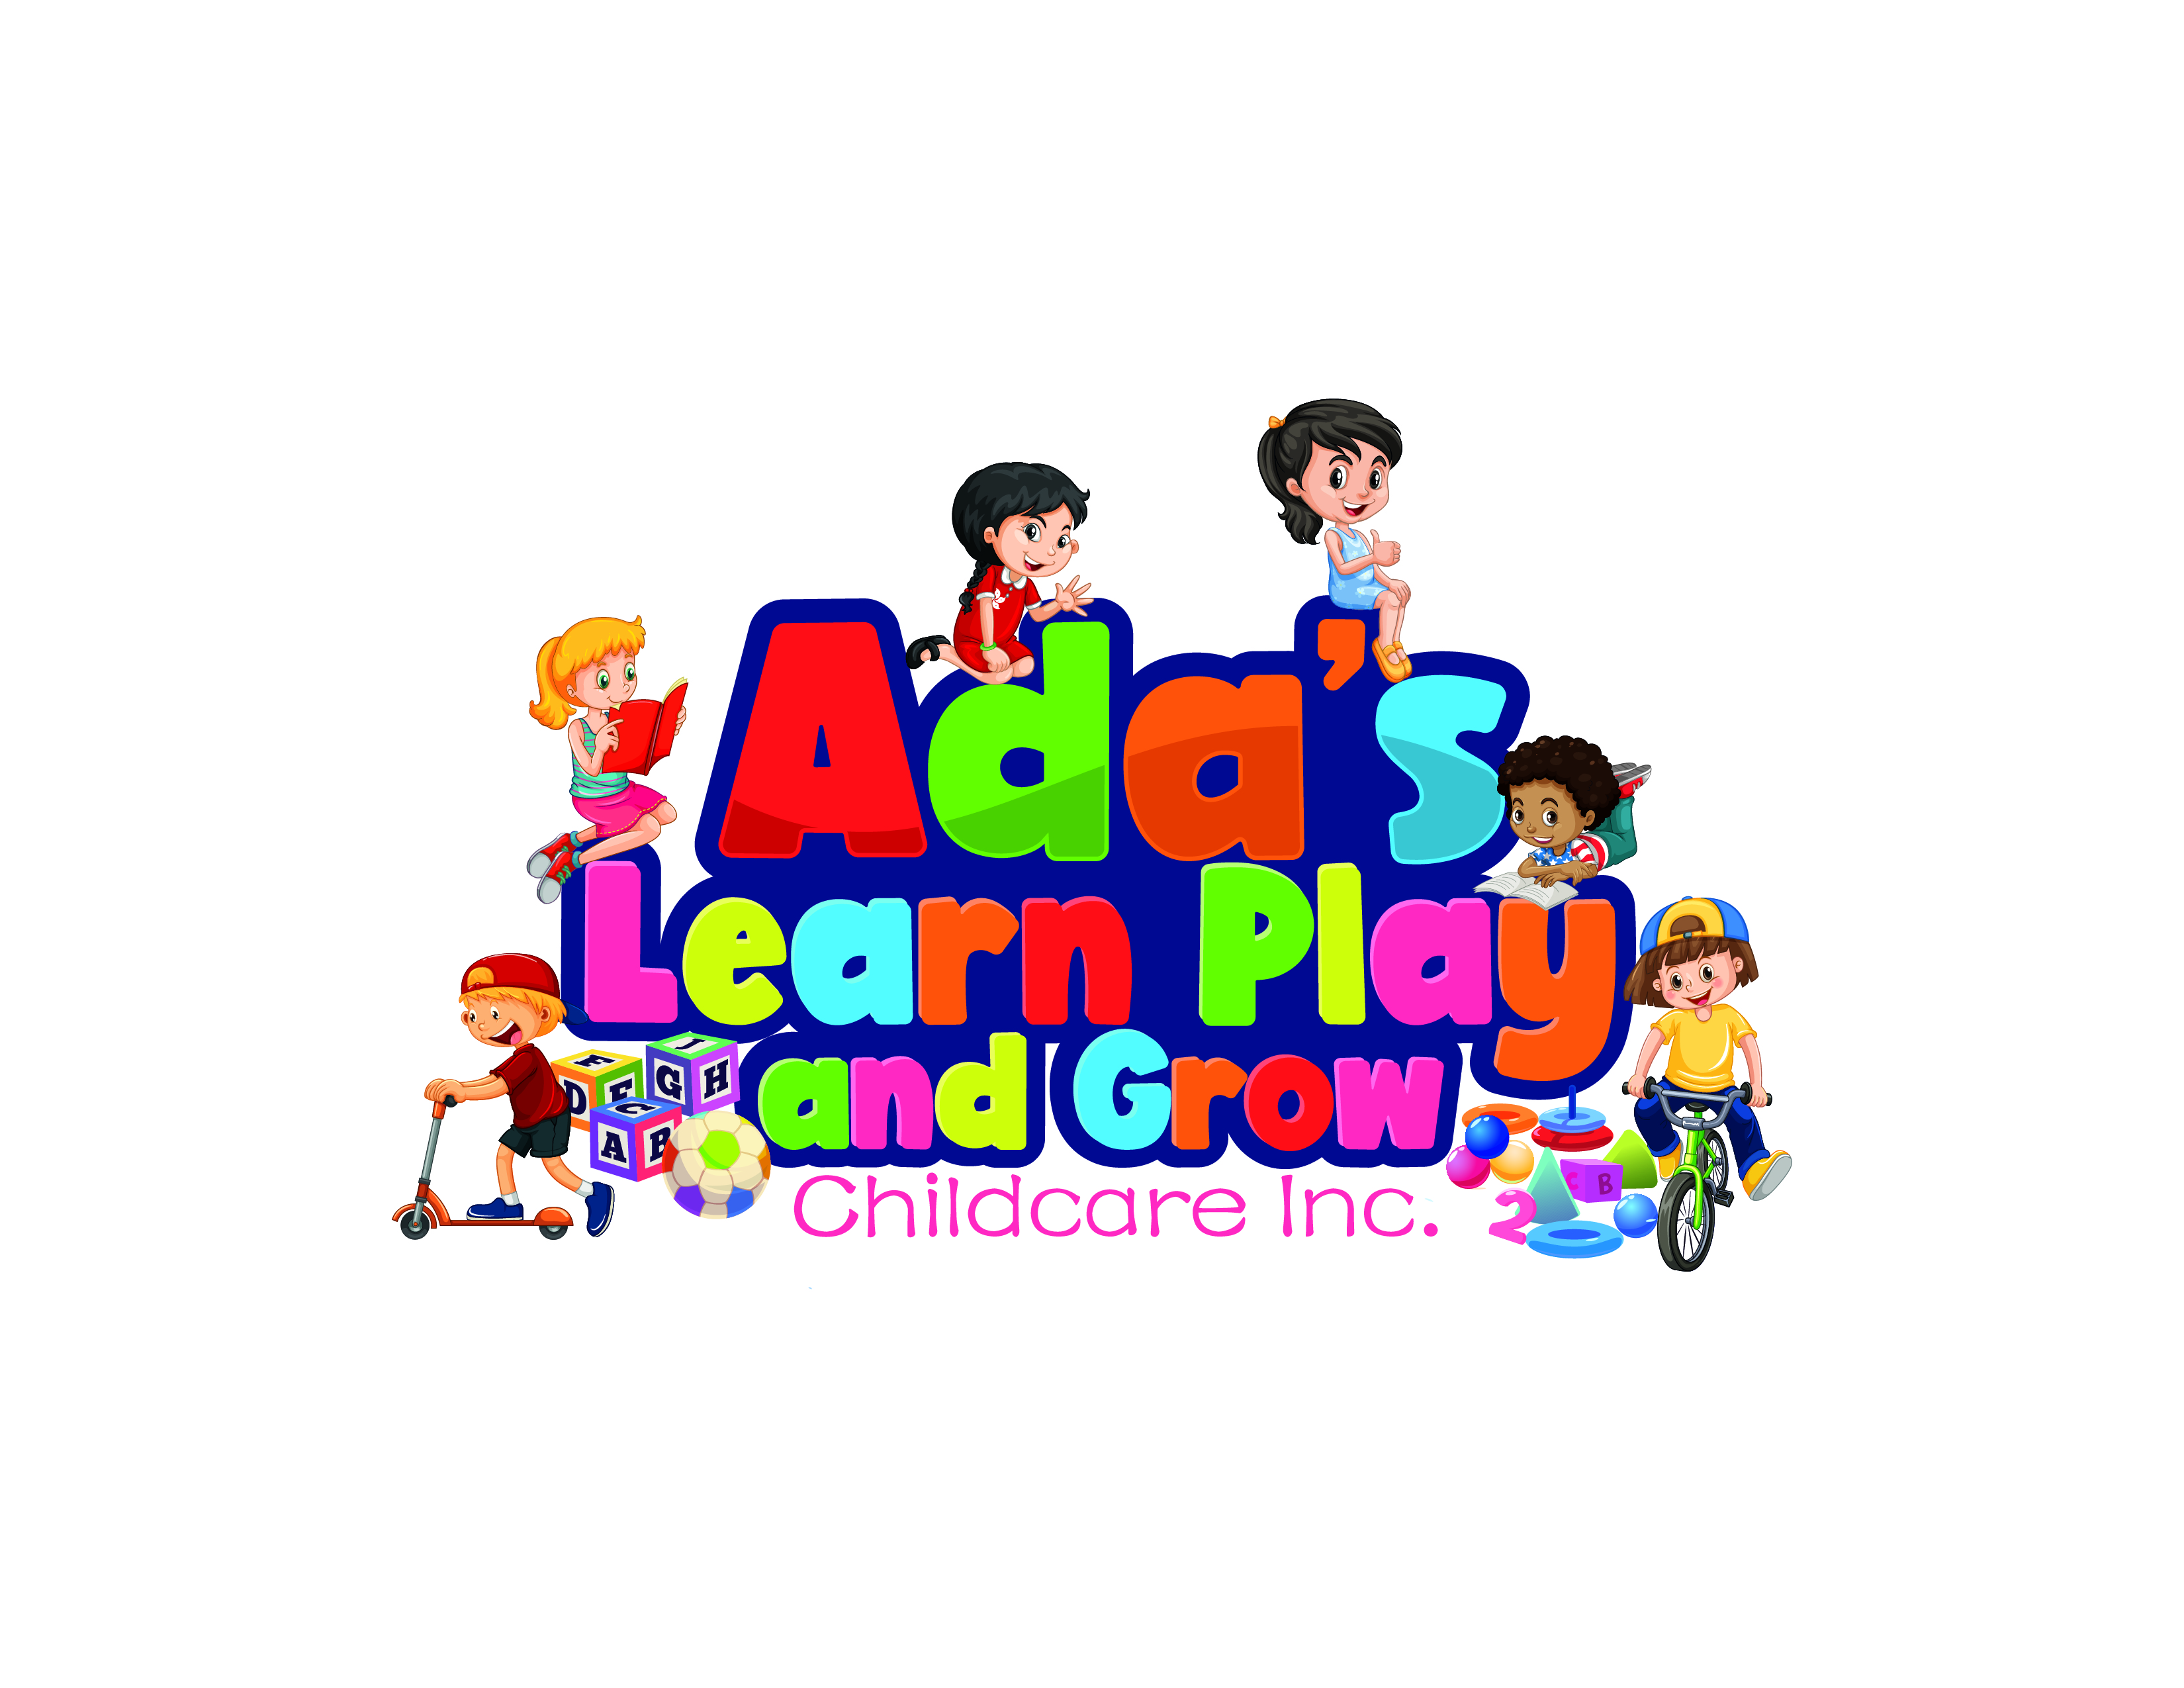 Ada's Learn Play and Grow